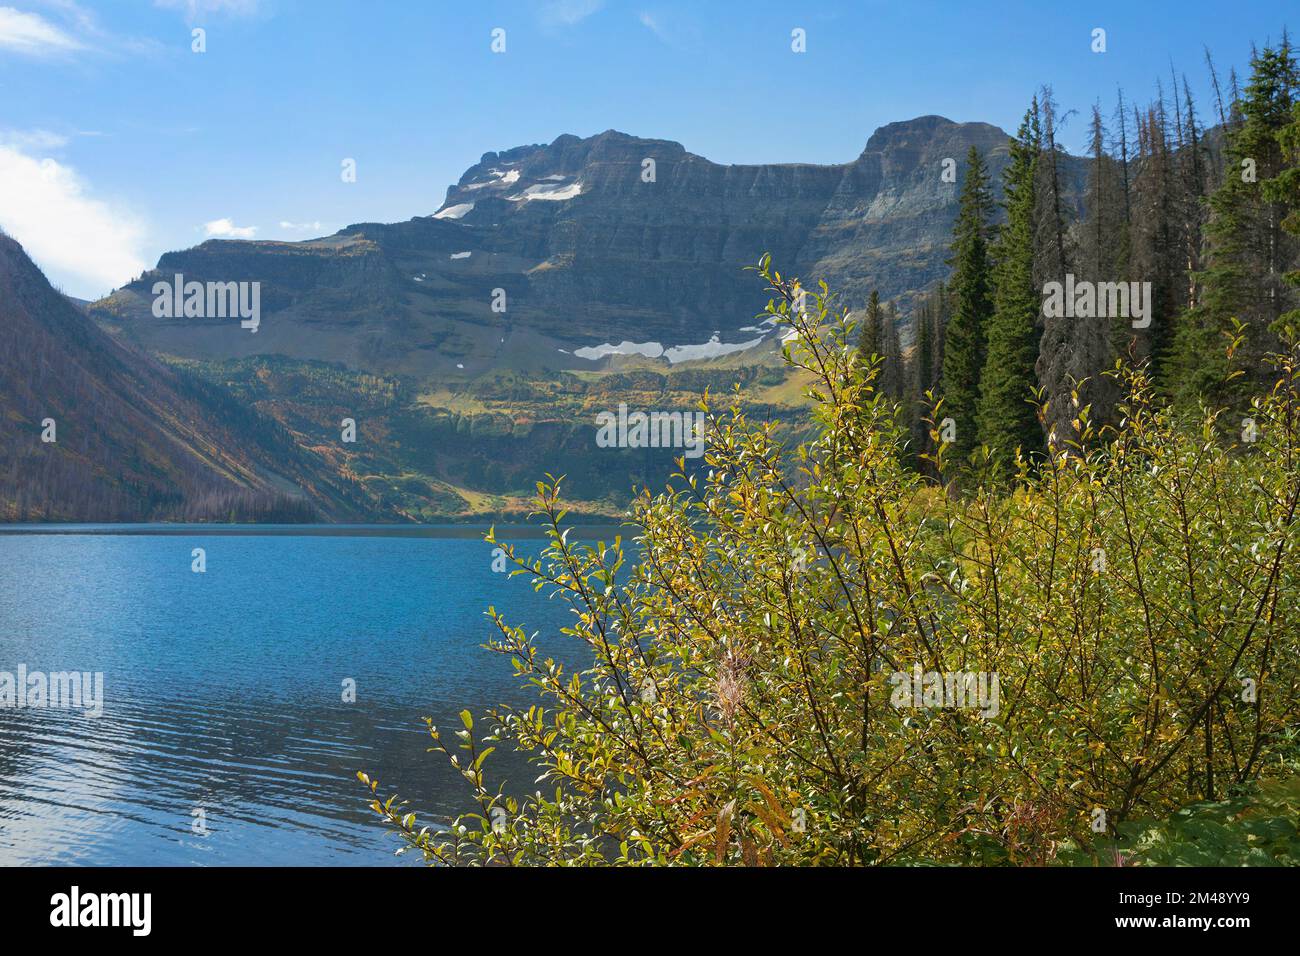 Cameron Lake, in einem gletscherzirk, und Mount Custer. Der See überquert die Grenze zwischen den USA und Kanada im Waterton Glacier International Peace Park Stockfoto